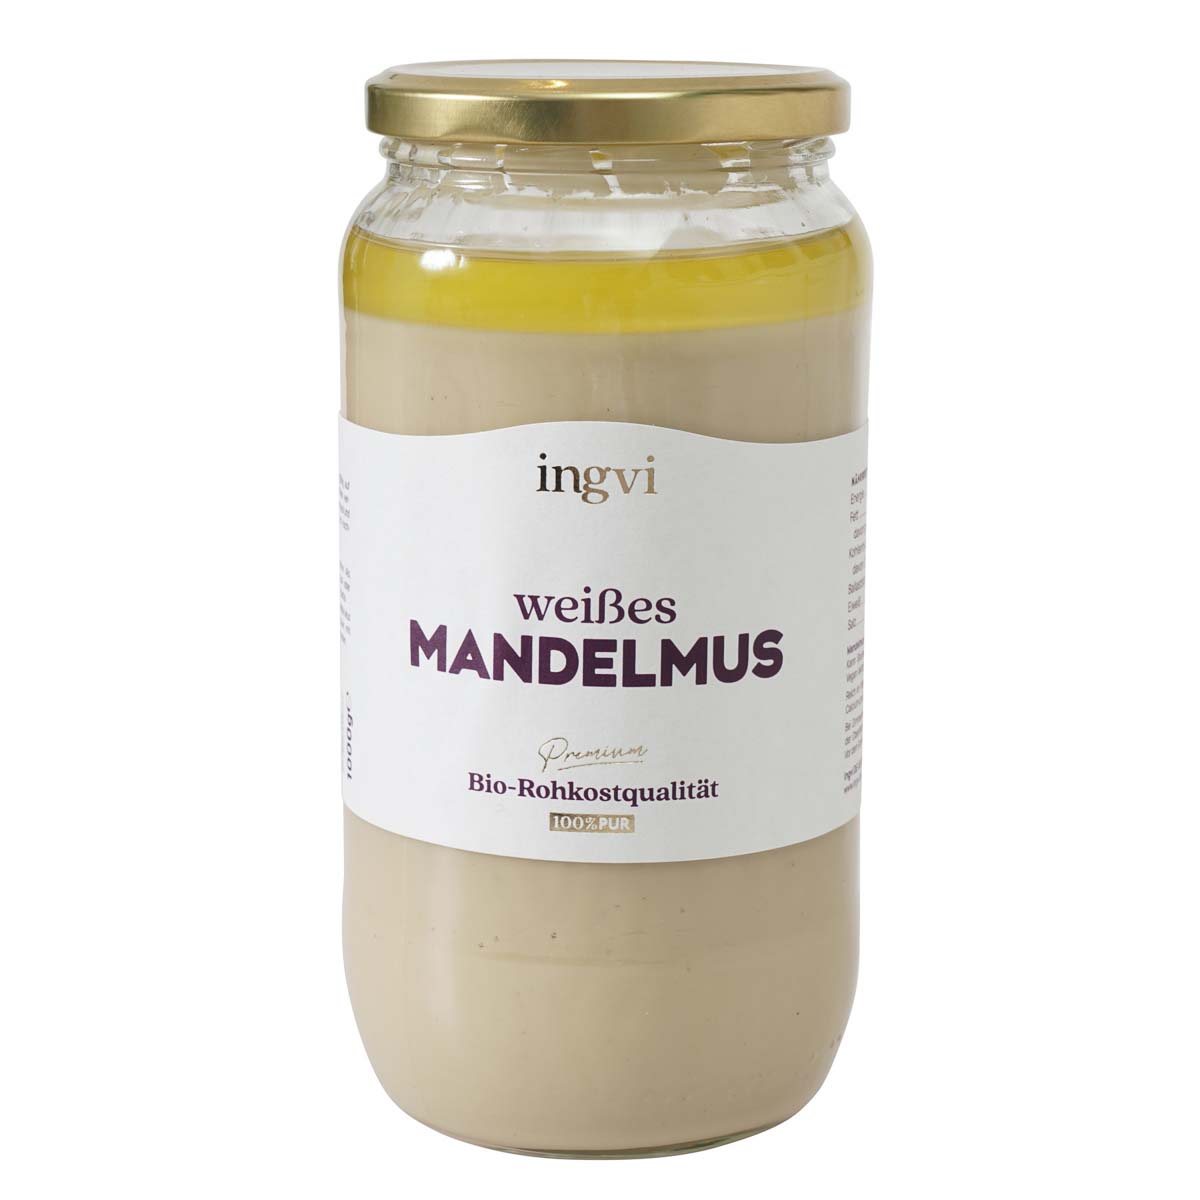 Mandelmus weiss Bio, roh, ingvi 250 g